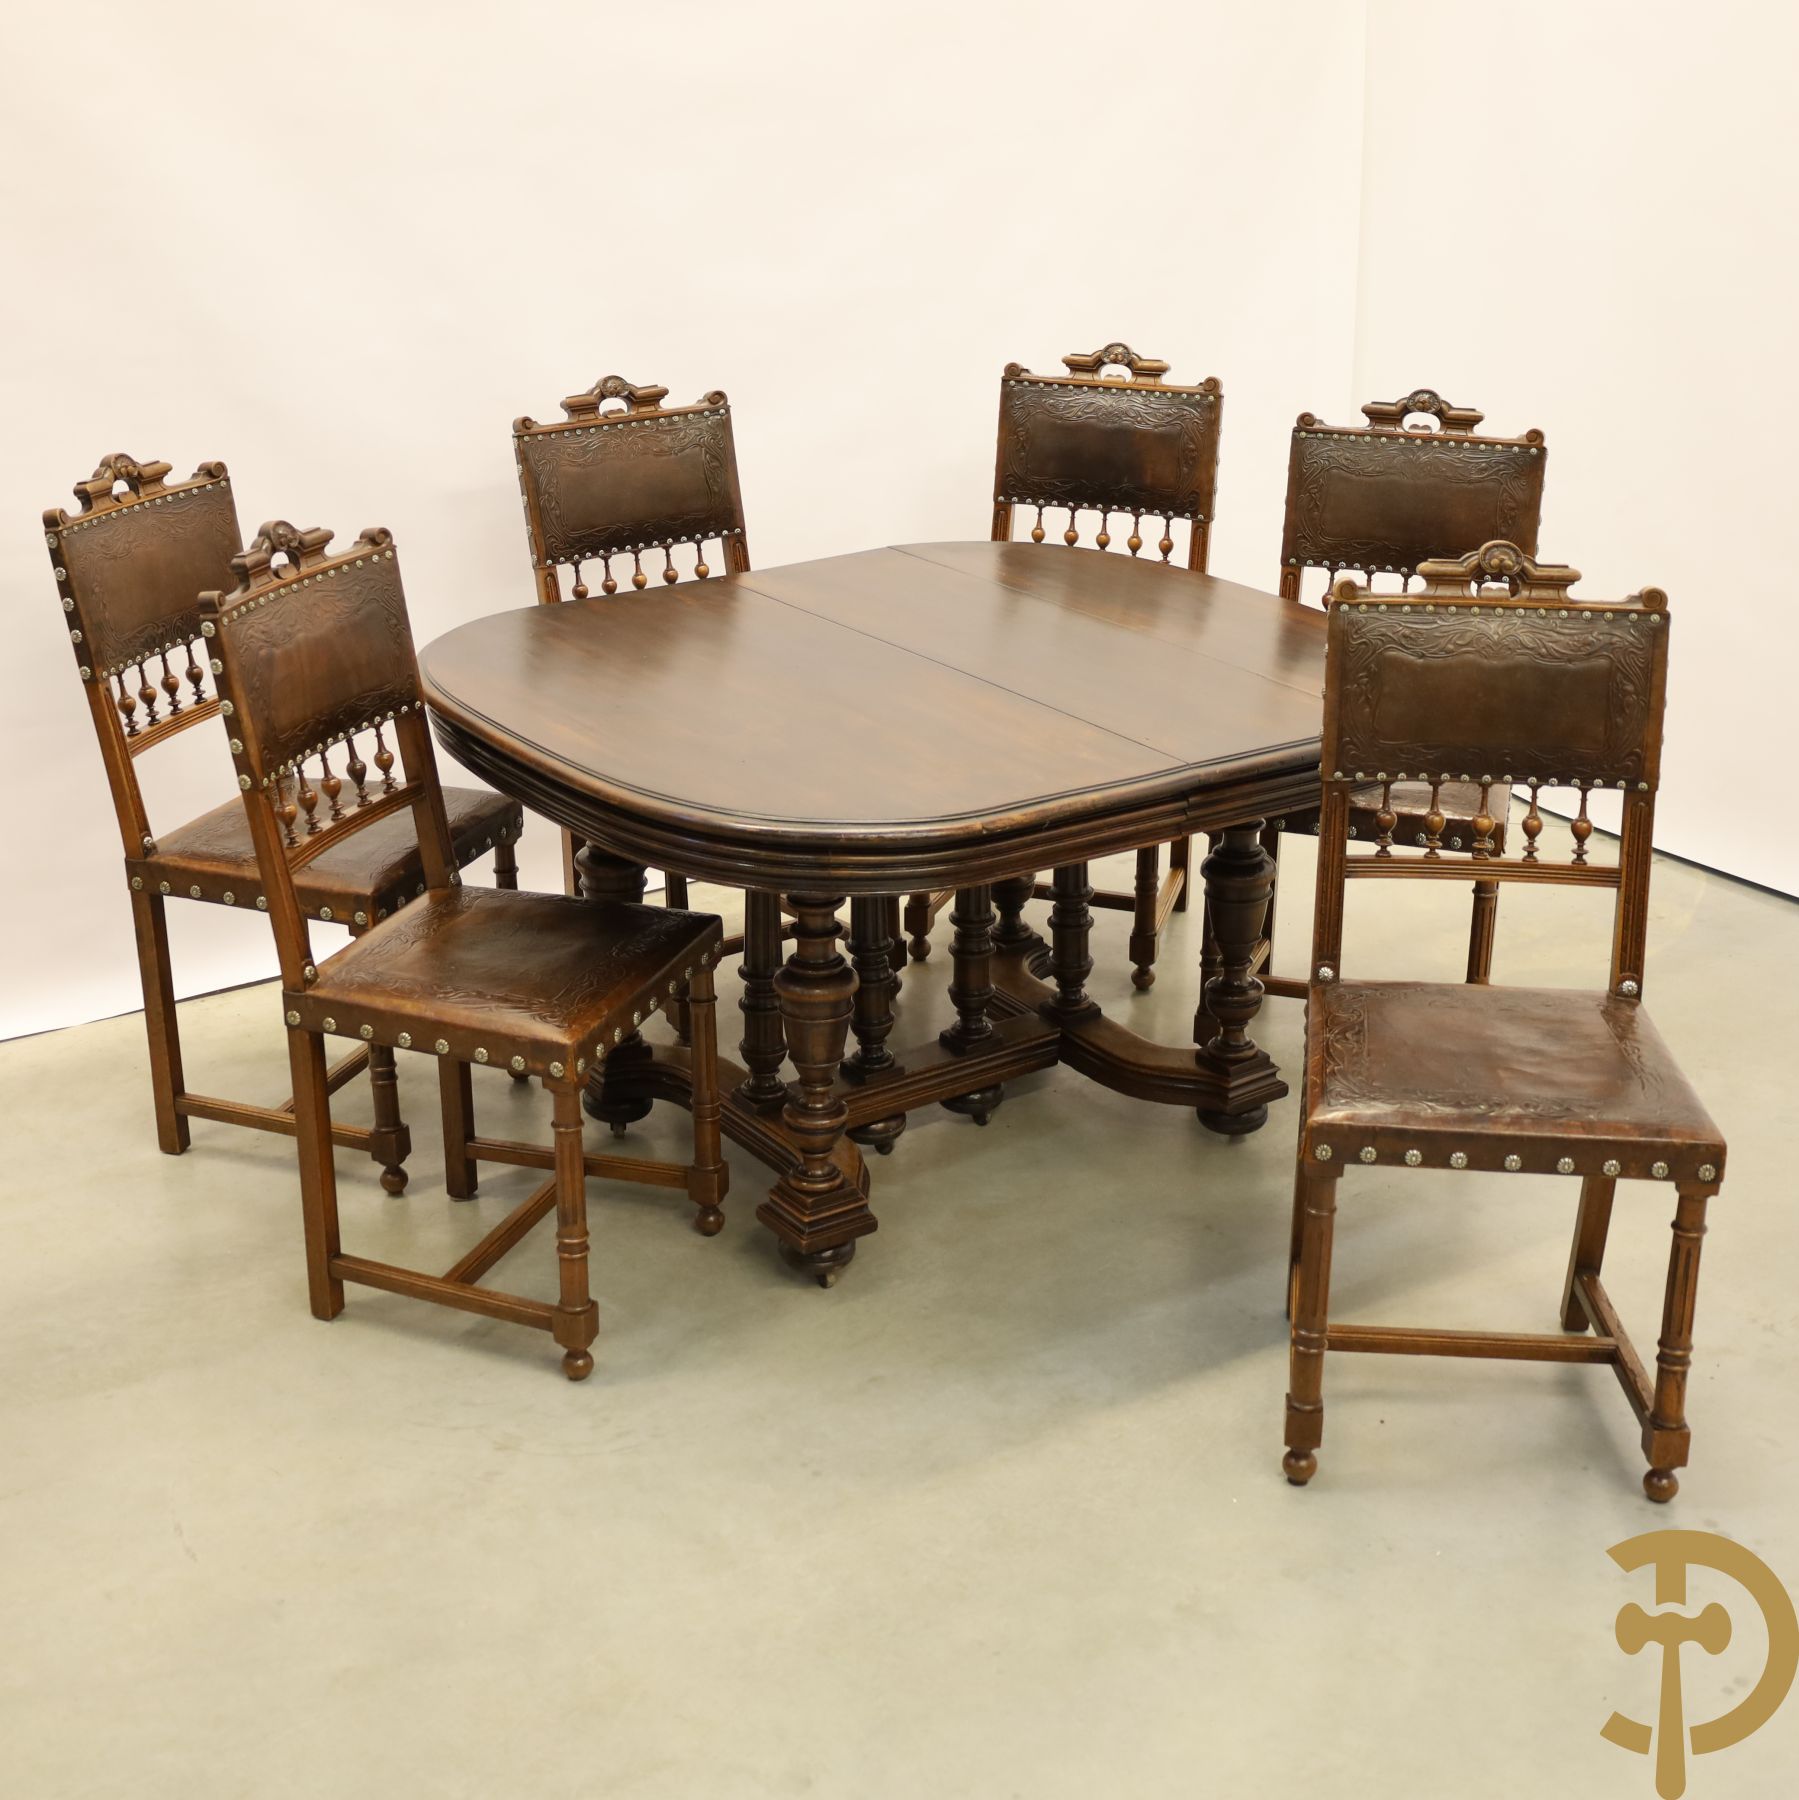 Notelaren Henri II tafel met ballusters (uittrekbaar) + 6 bijhorende stoelen met lederbekleding